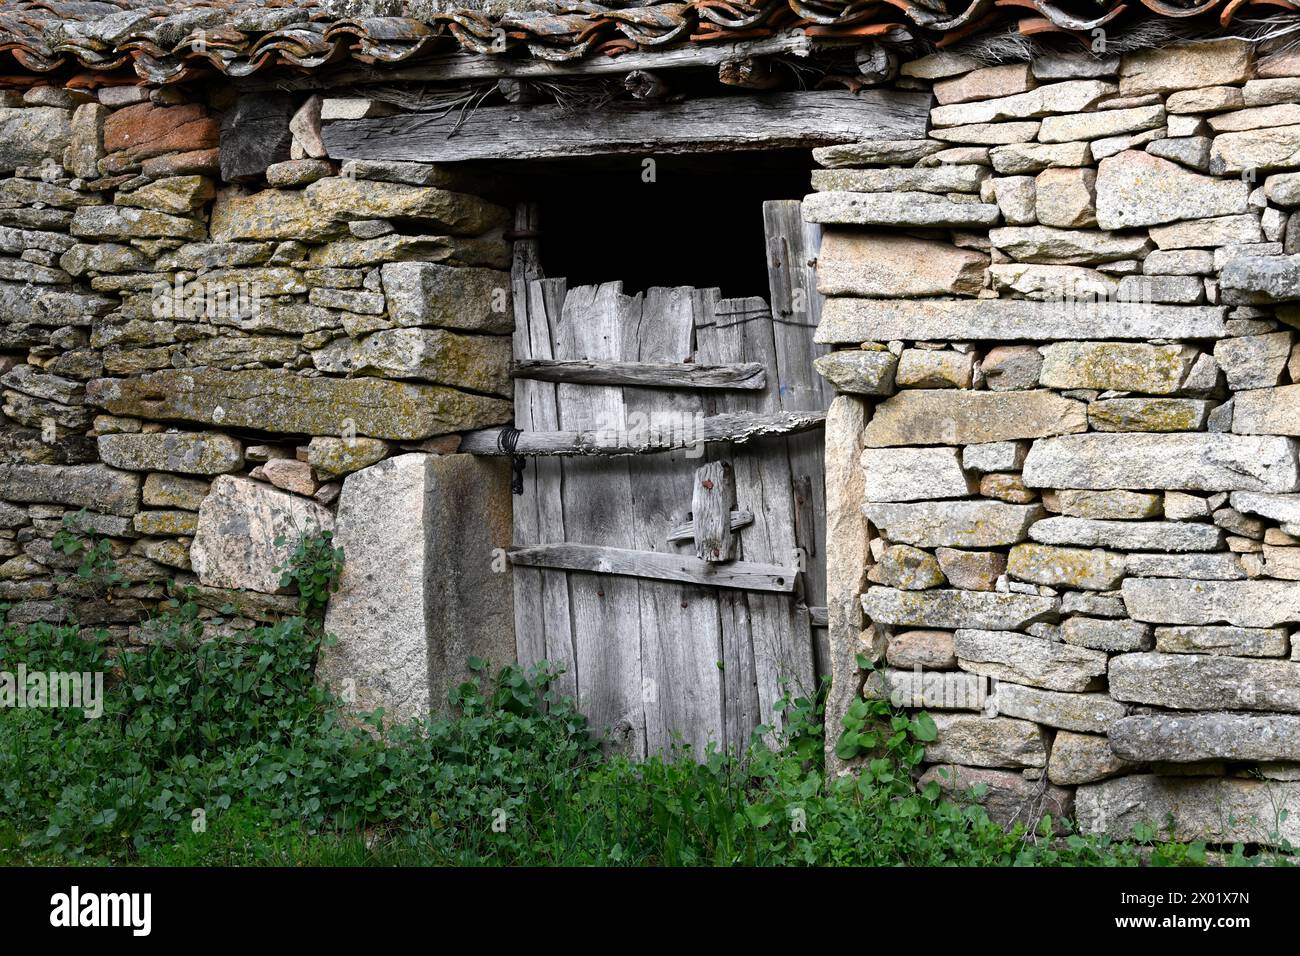 Fornillos de Fermoselle, Traditional architecture. Sayago, Arribes del Duero Natural Park, Zamora province, Castilla y Leon, Spain. Stock Photo